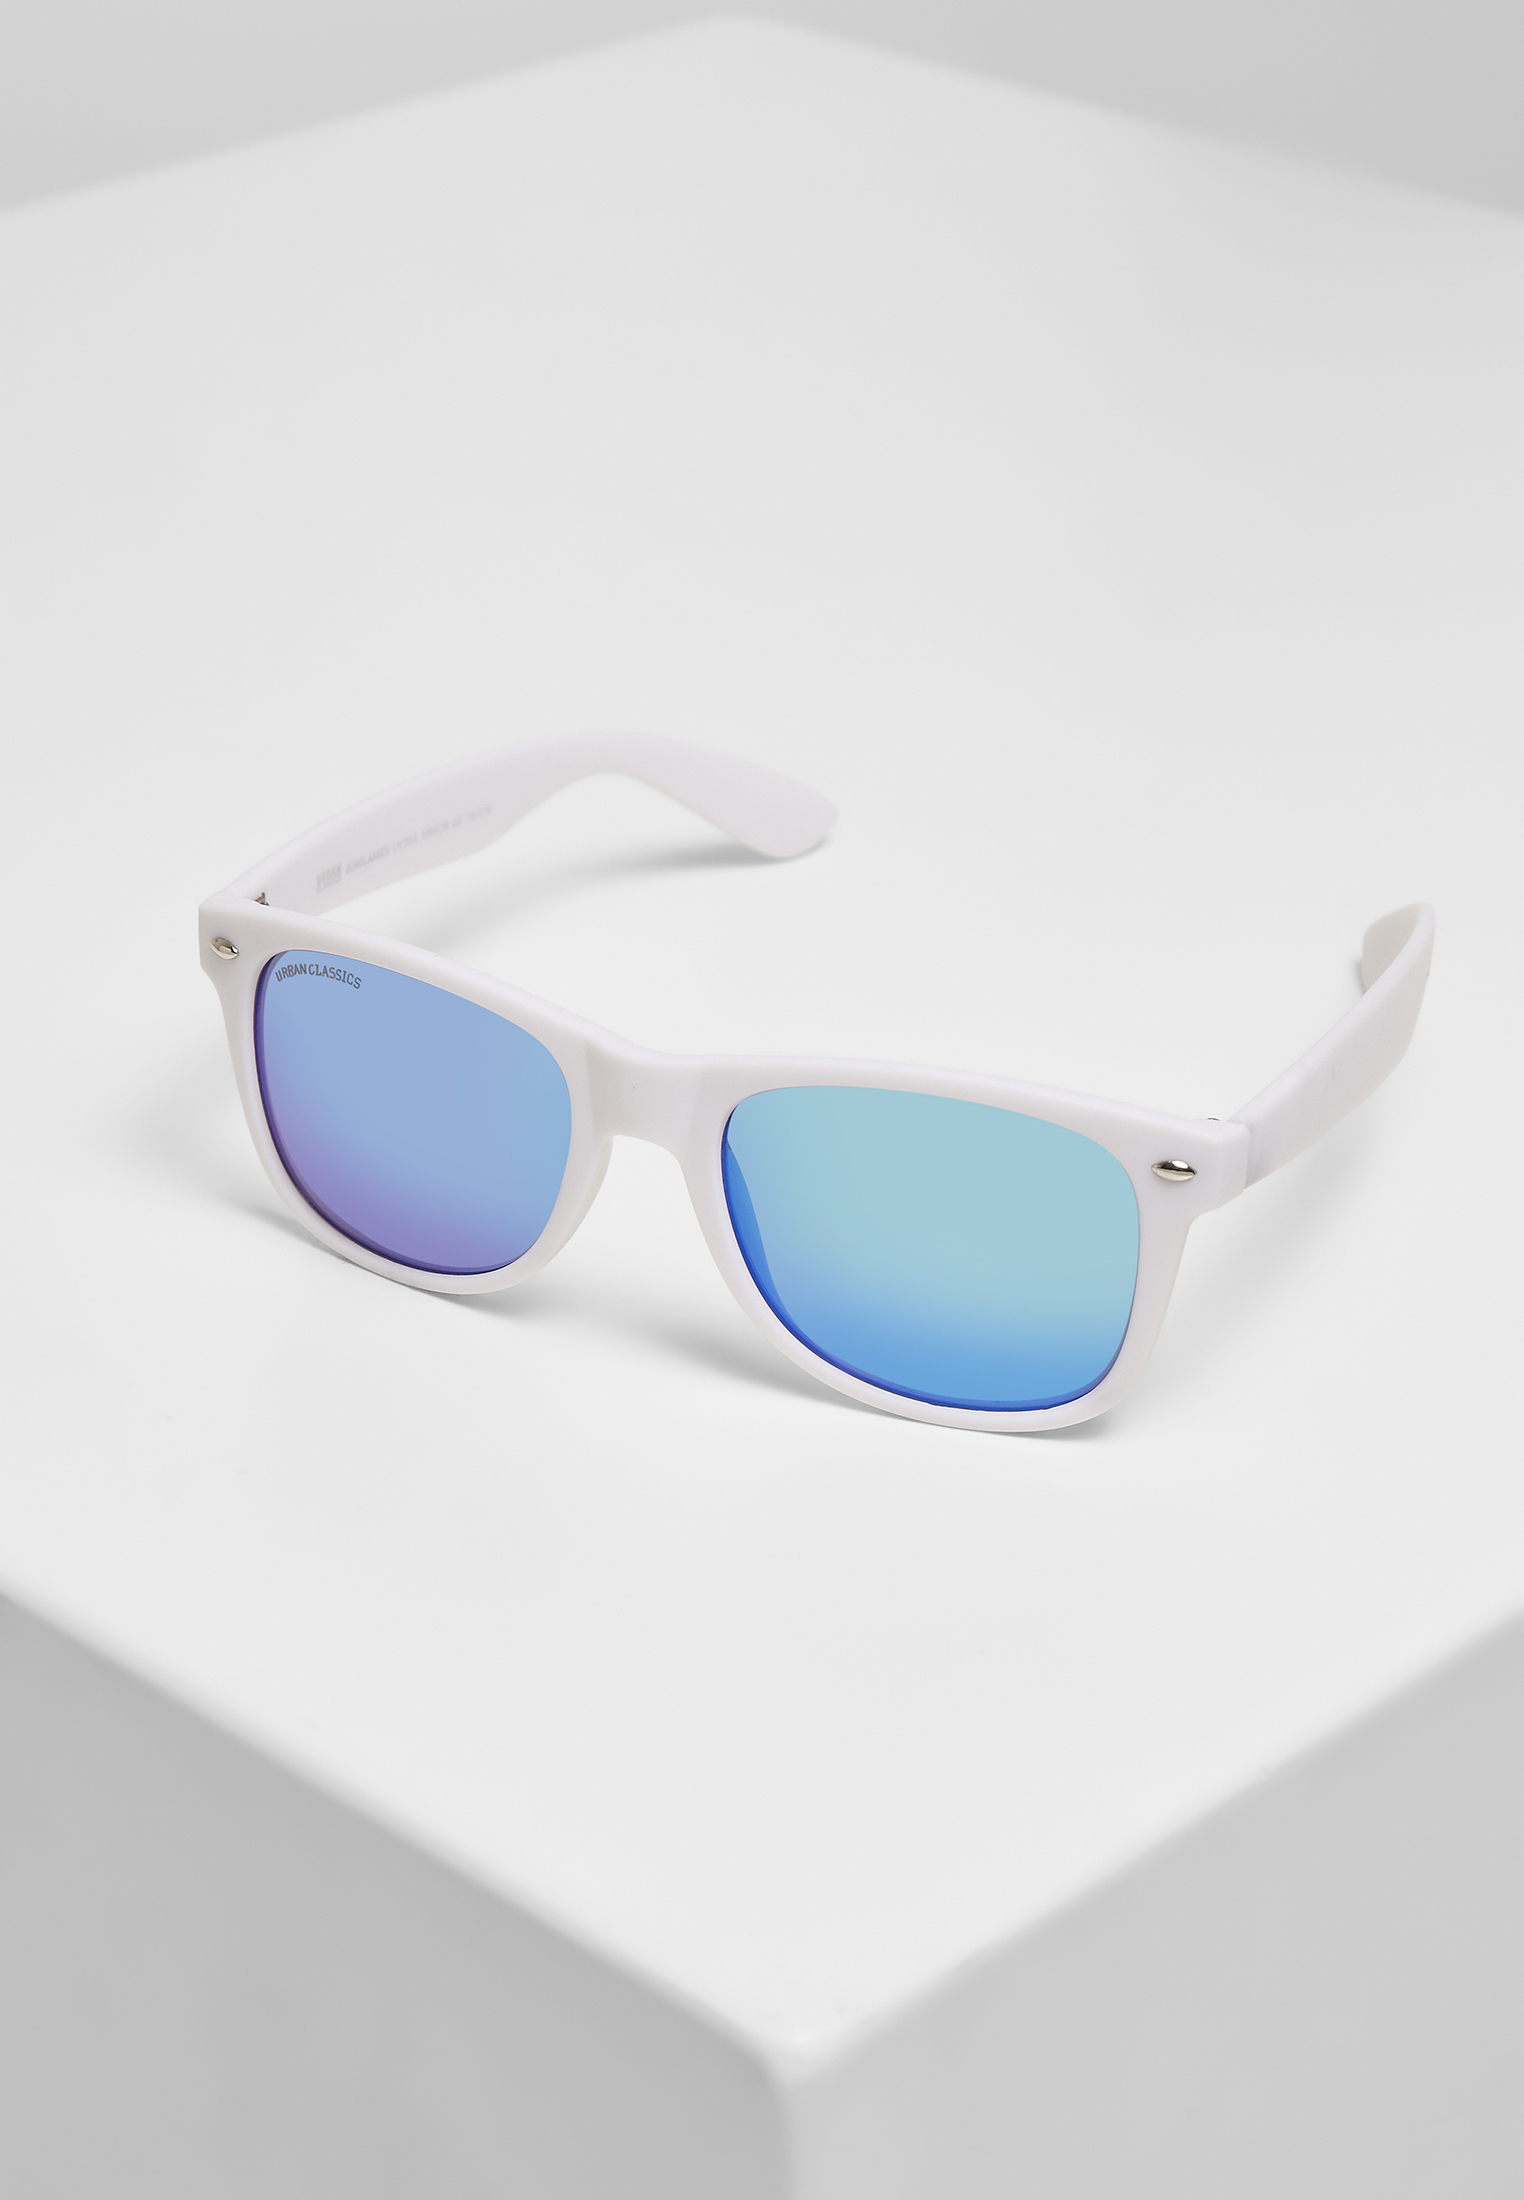 Sonnenbrillen Sunglasses Likoma Mirror UC in Farbe wht/blu